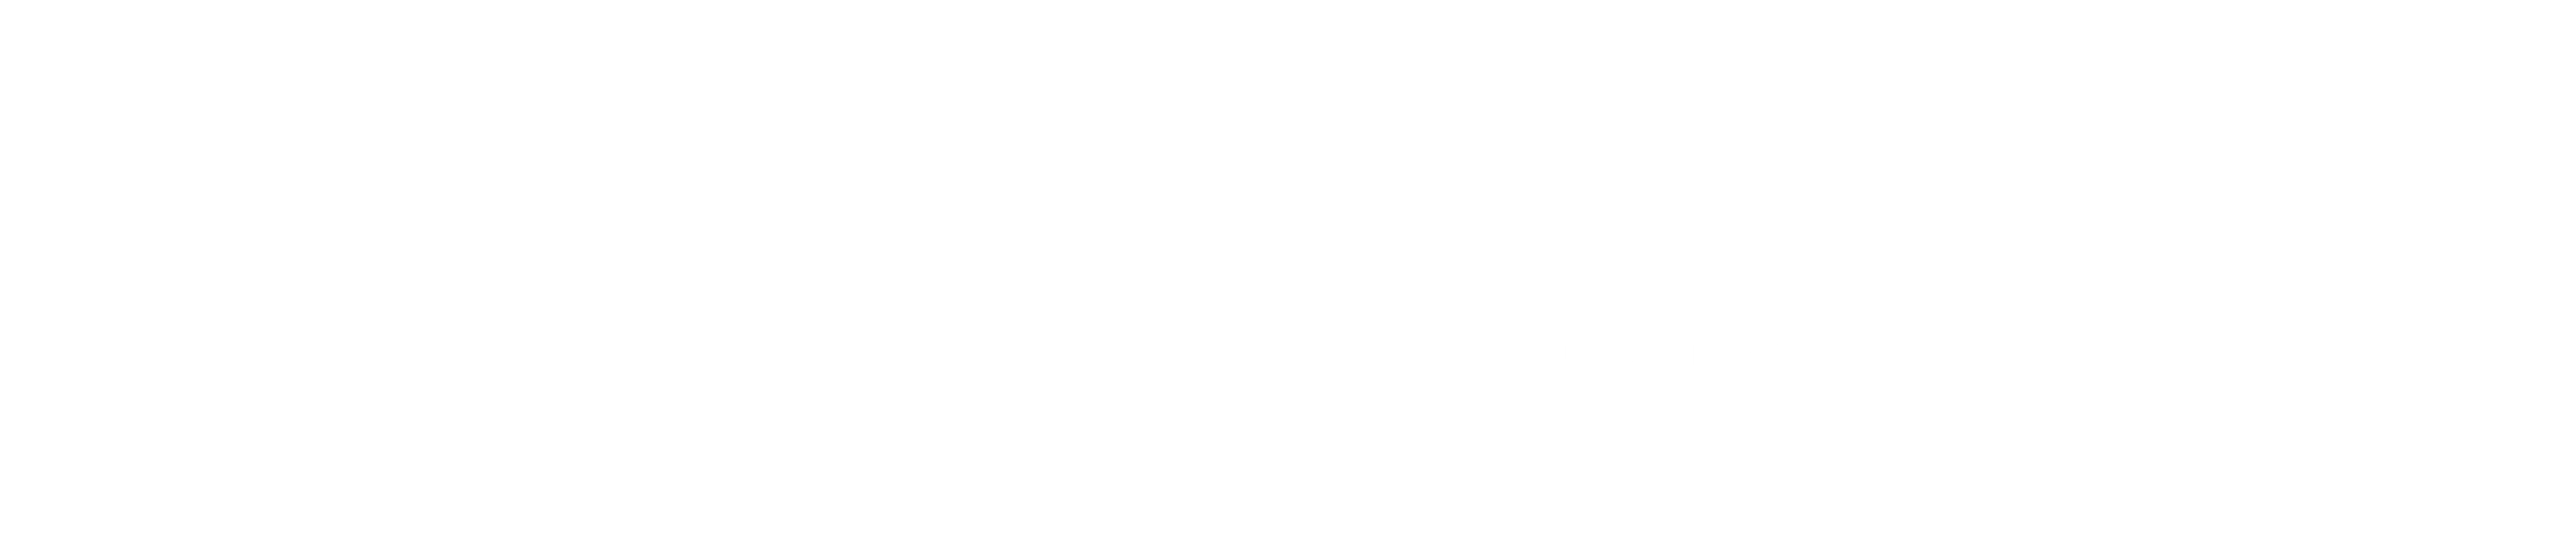 Veenstra Design & Fine Home Building